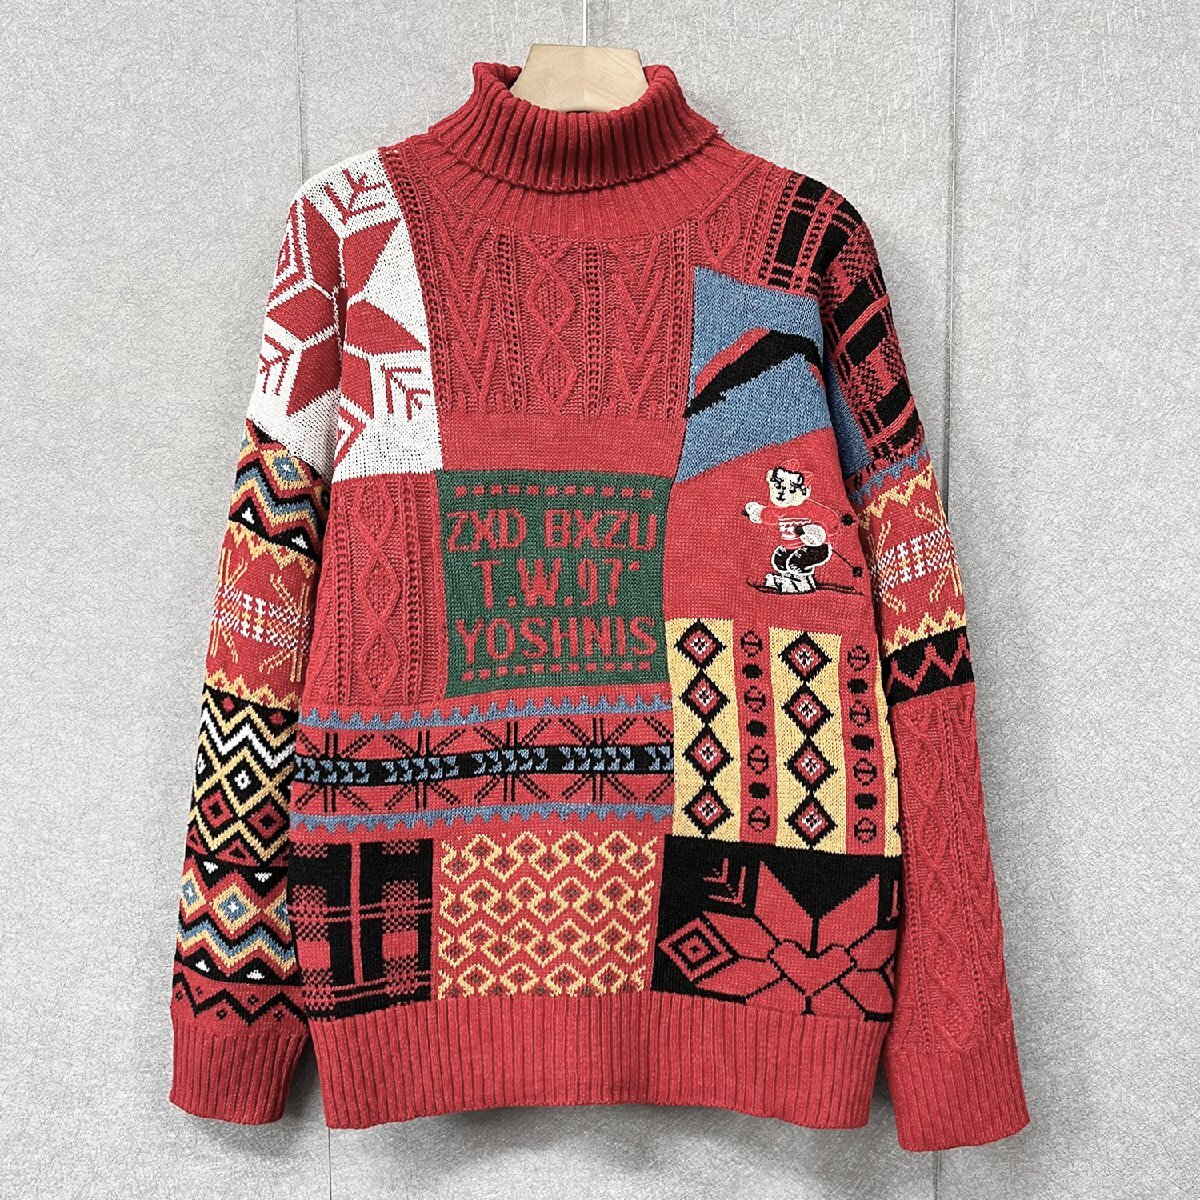 個性・セーター 定価5万◆Emmauela・イタリア・ミラノ発◆高級 ニット スウェット 防寒 快適 ソフト スウェット クリスマス L/48サイズの画像1